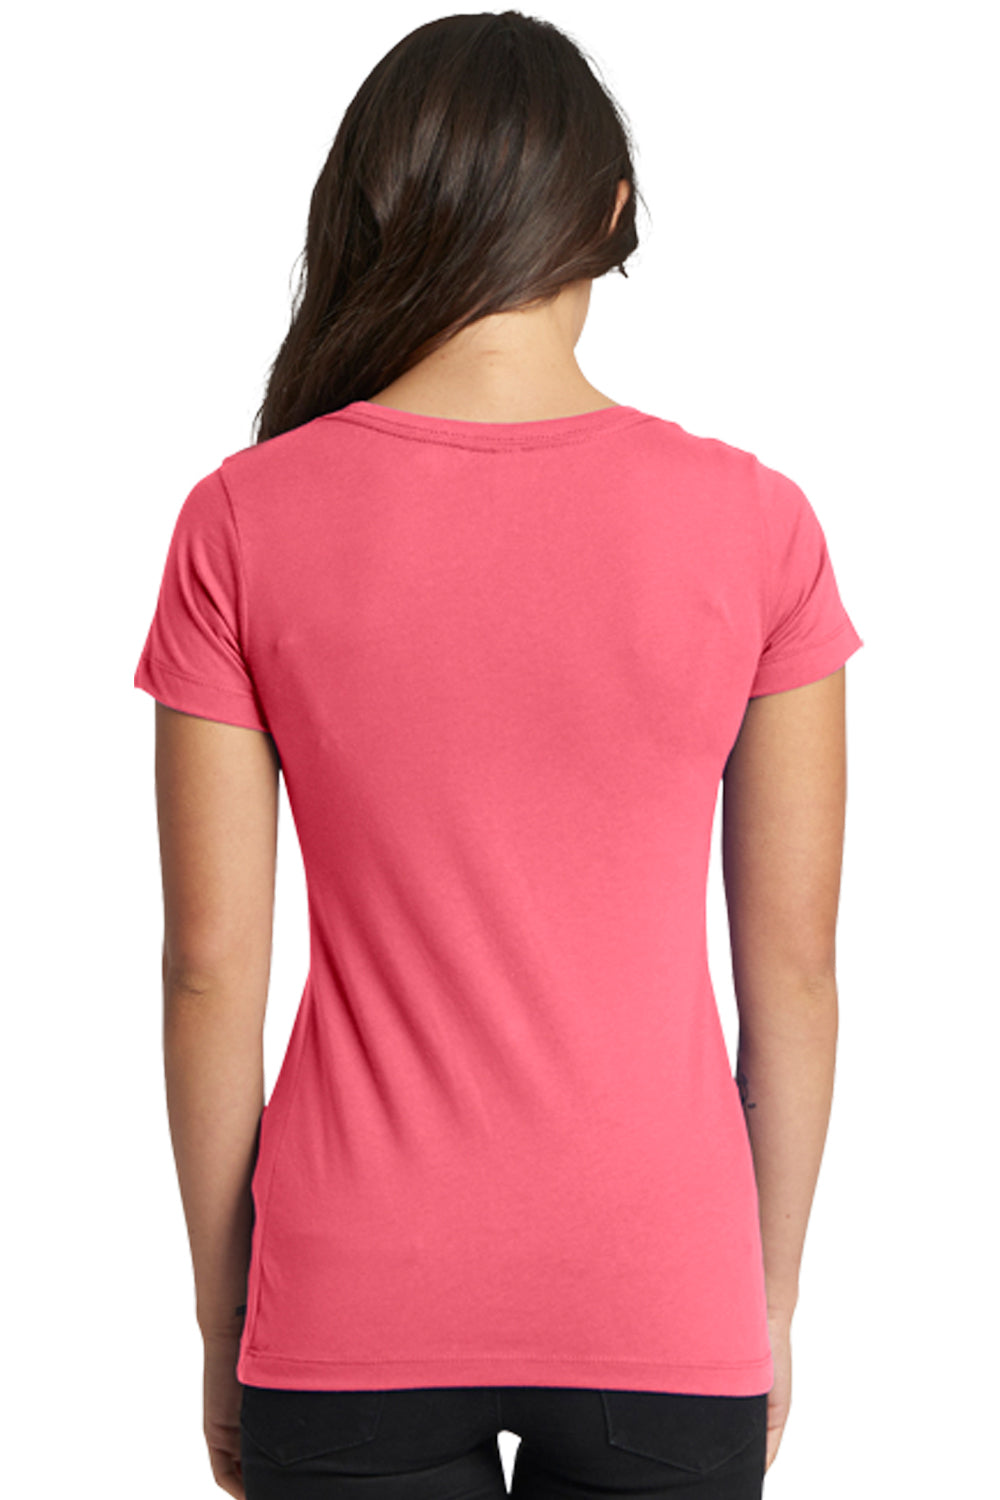 Next Level N1510 Womens Ideal Jersey Short Sleeve Crewneck T-Shirt Hot Pink Back